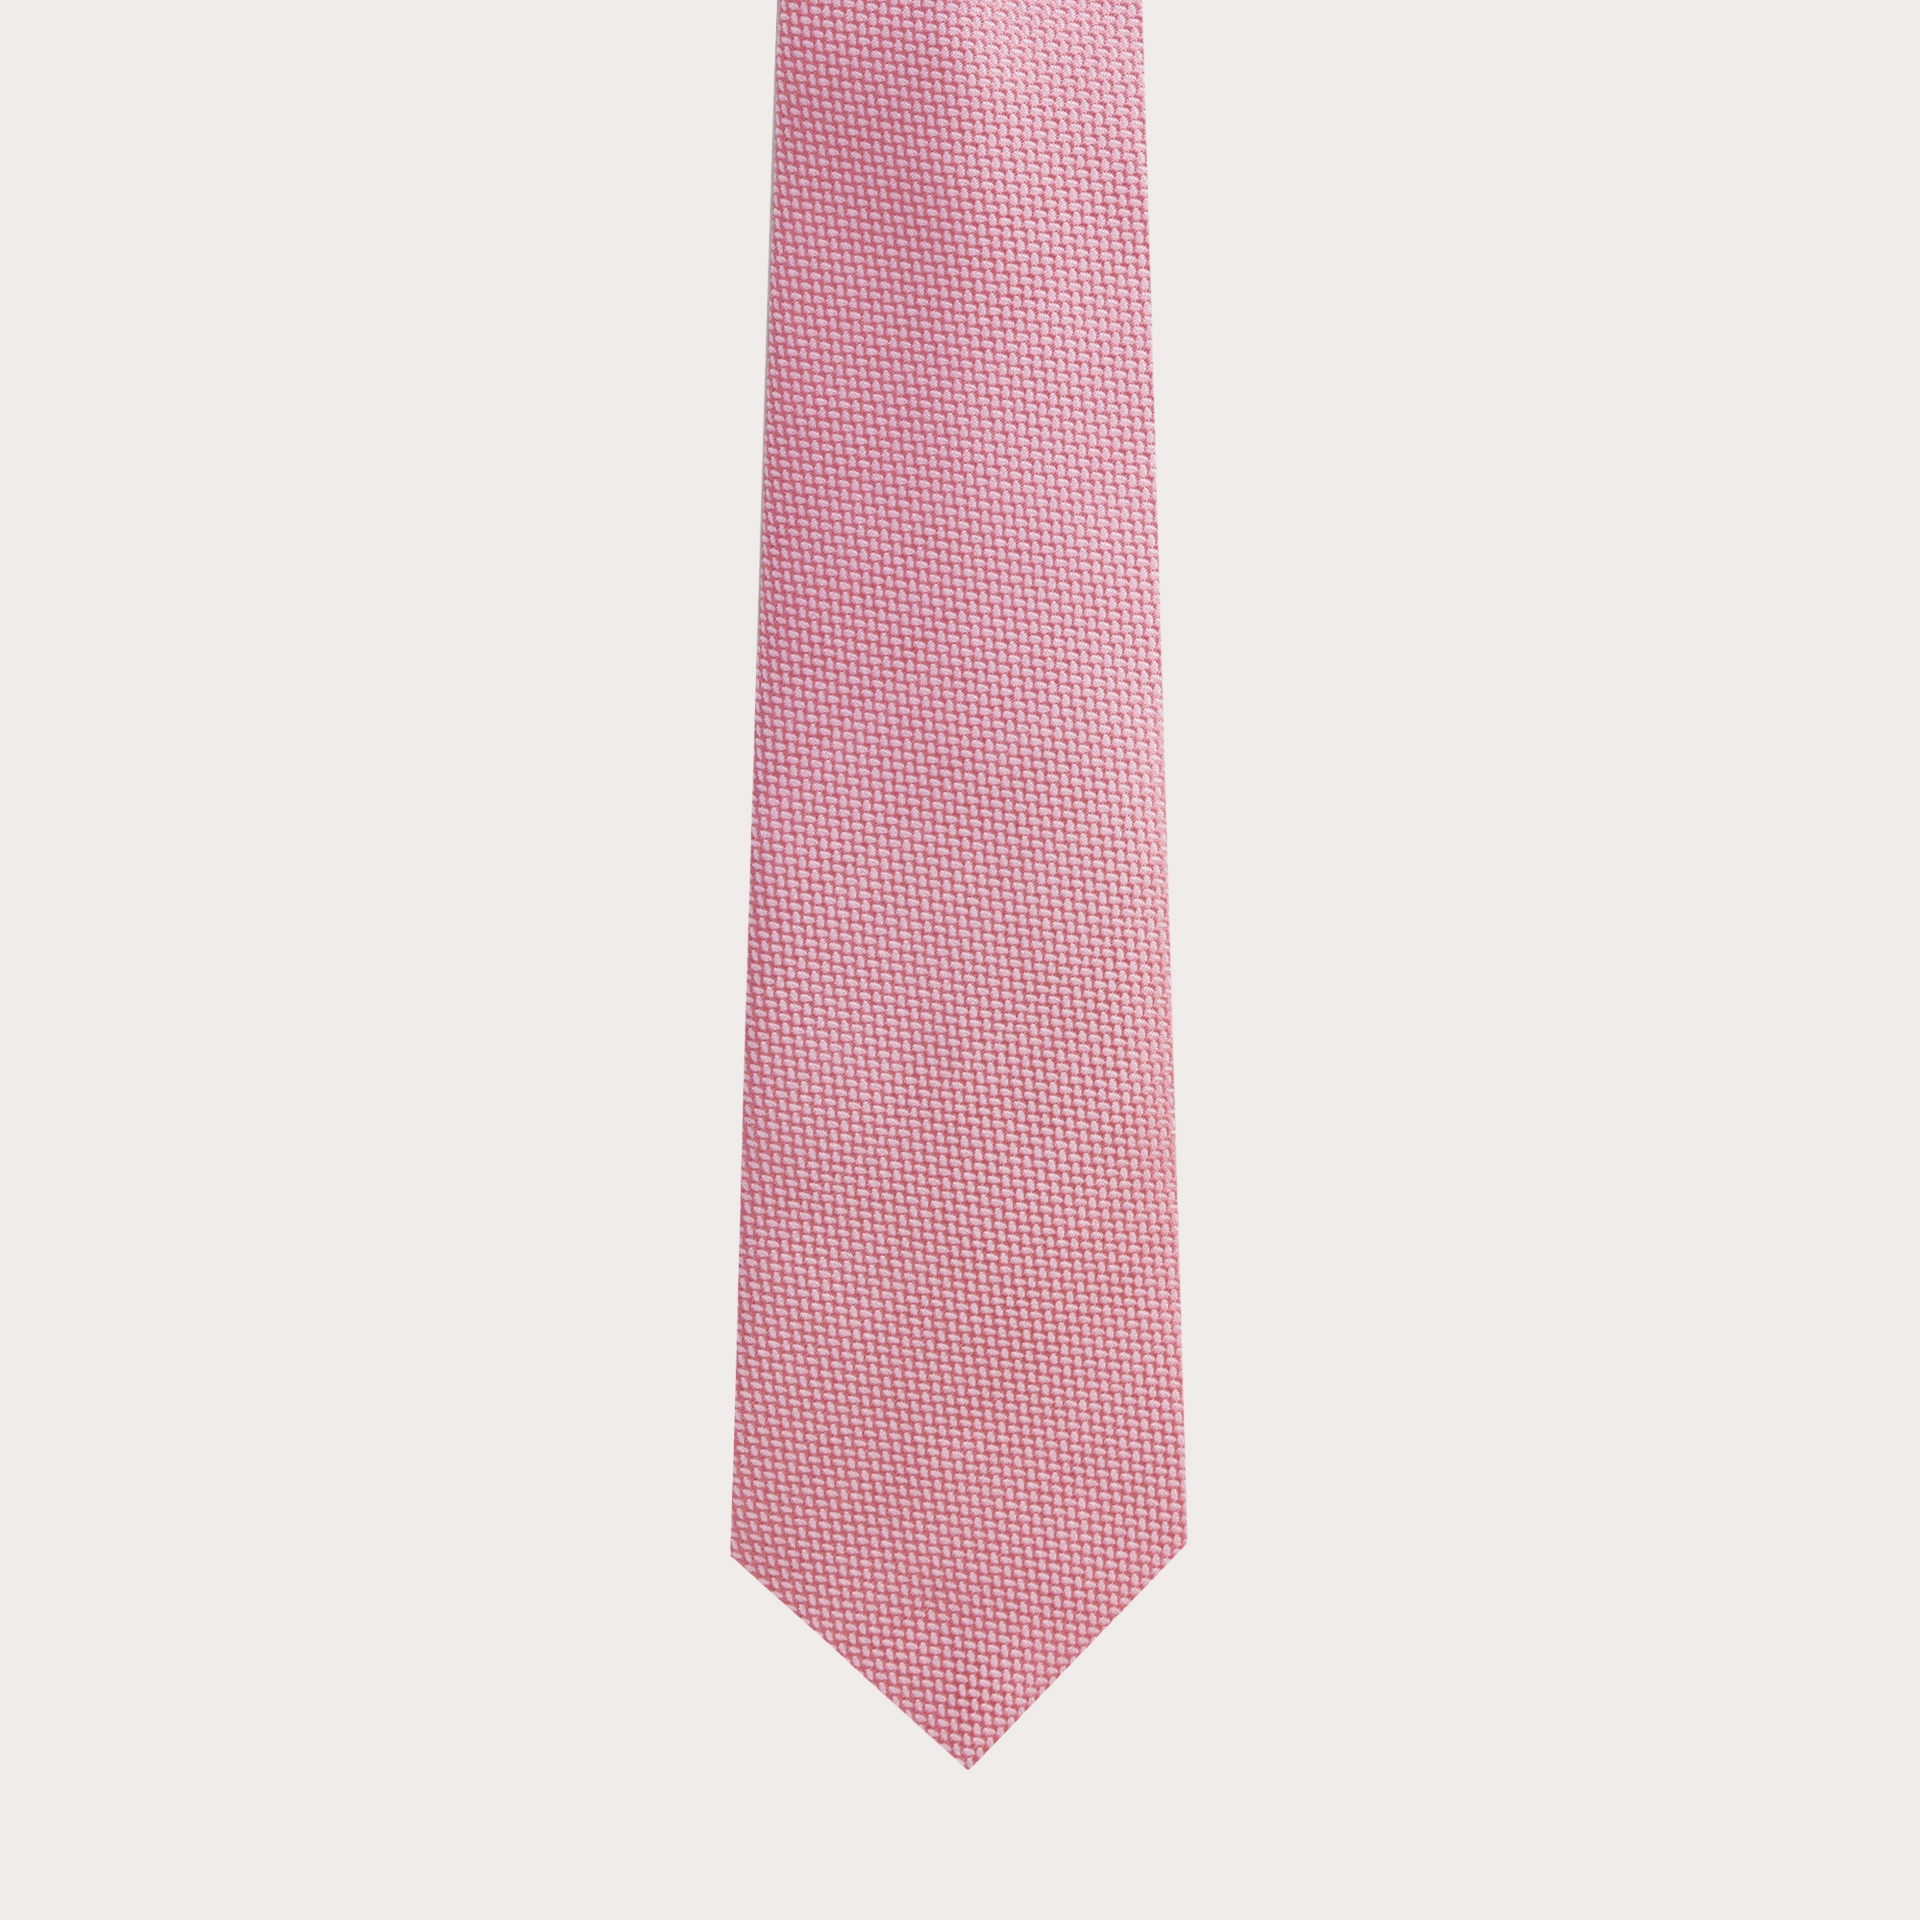 Cravatta in seta jacquard, rosa